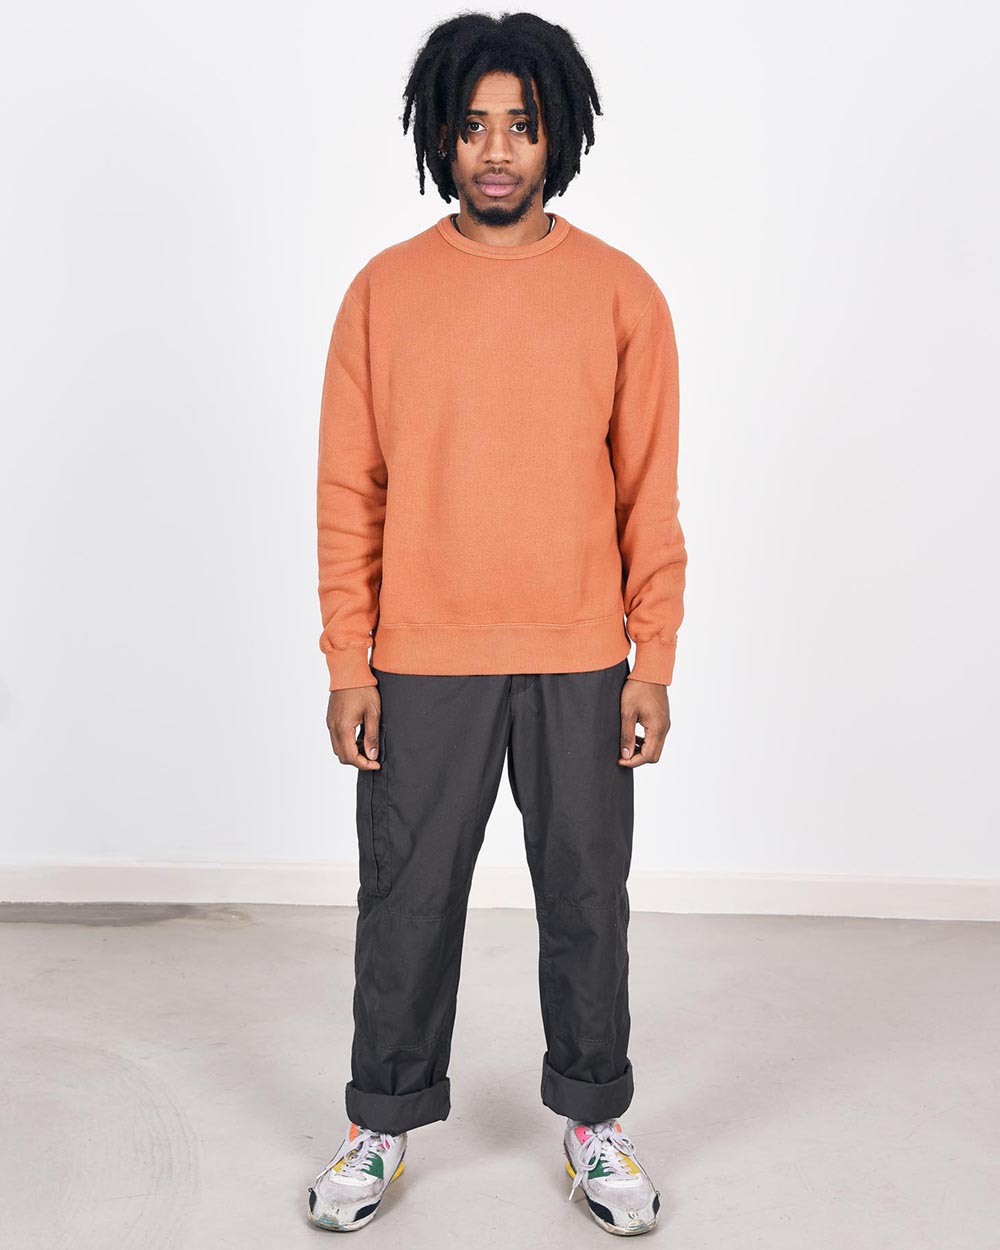 Loop & Weft Tompkins Knit Crewneck Sweatshirt - Orange Brown